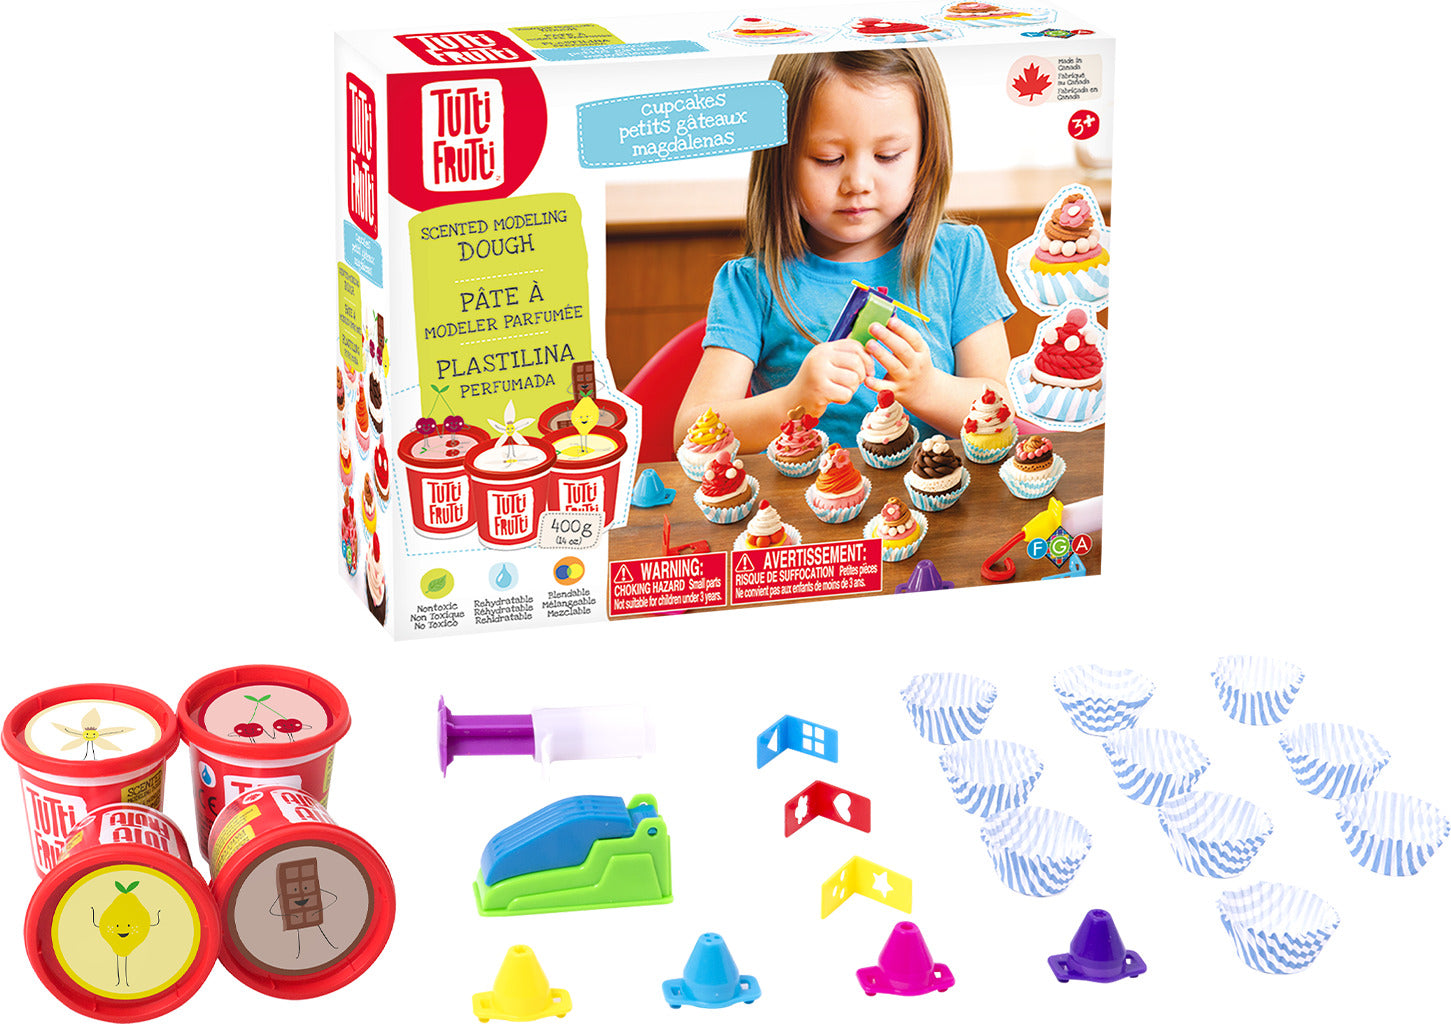 Tutti Frutti Cupcakes Kit